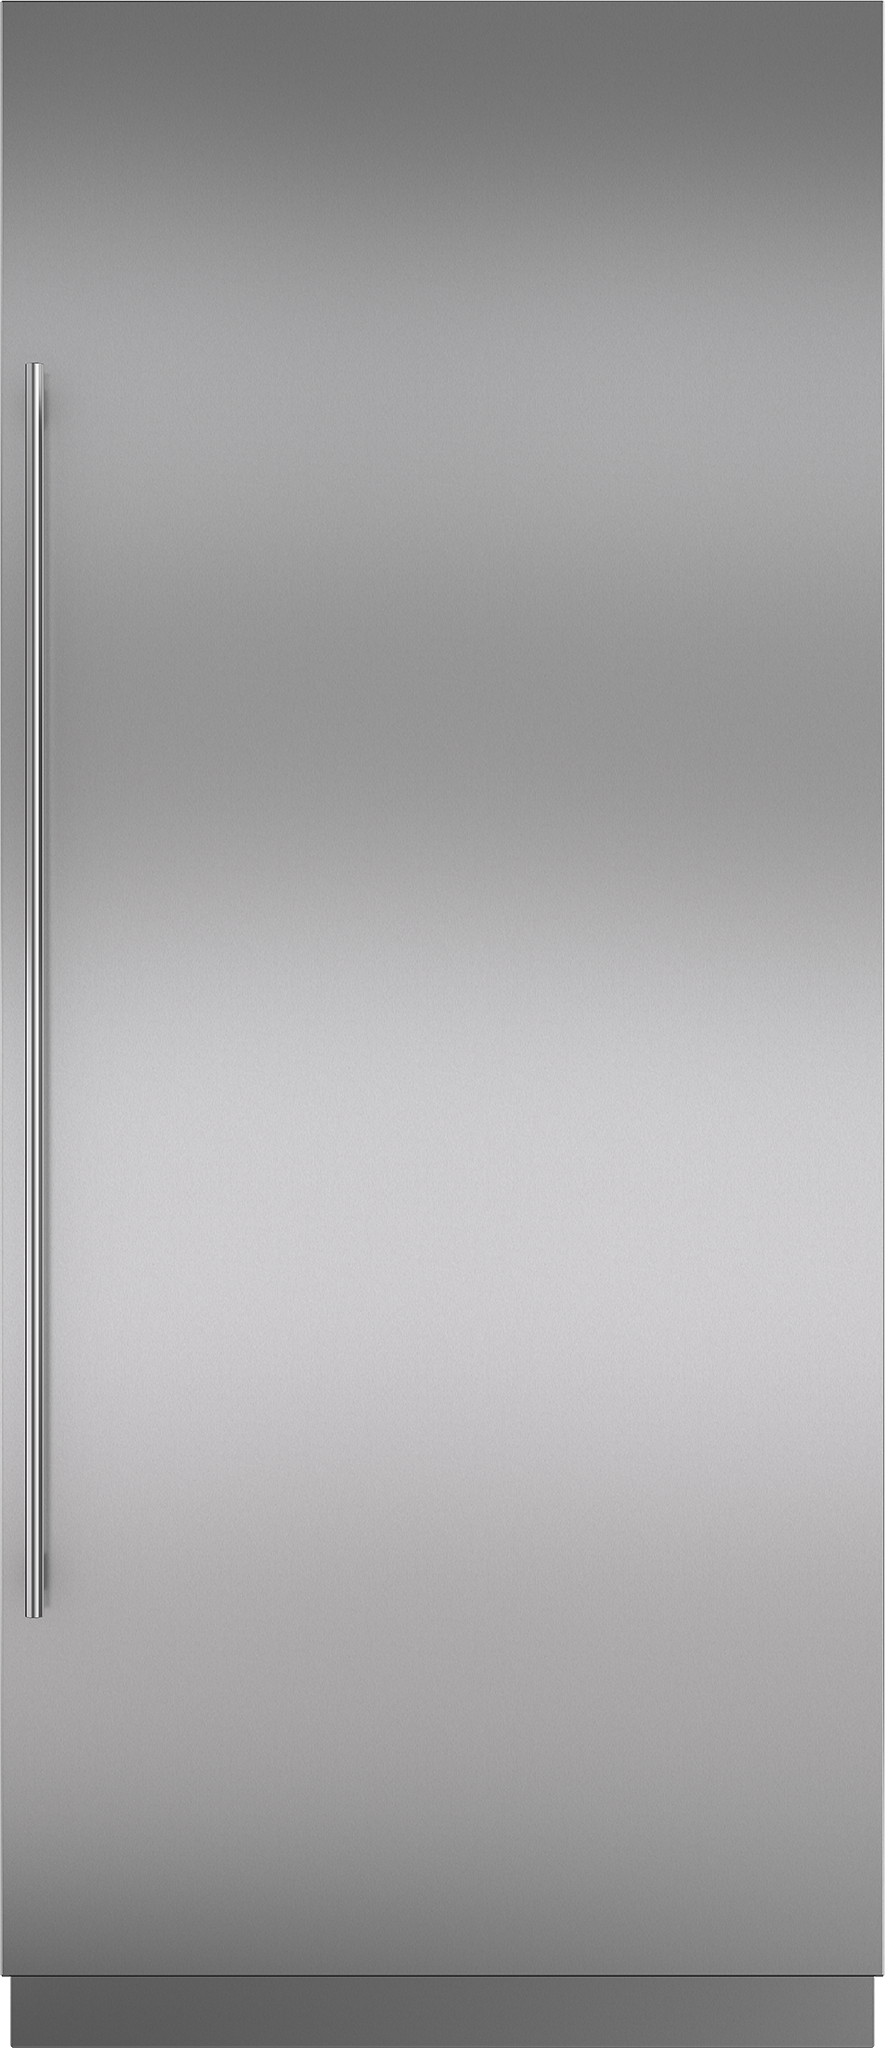 Panel de puerta de acero inoxidable con manija tubular y zócalo de 4